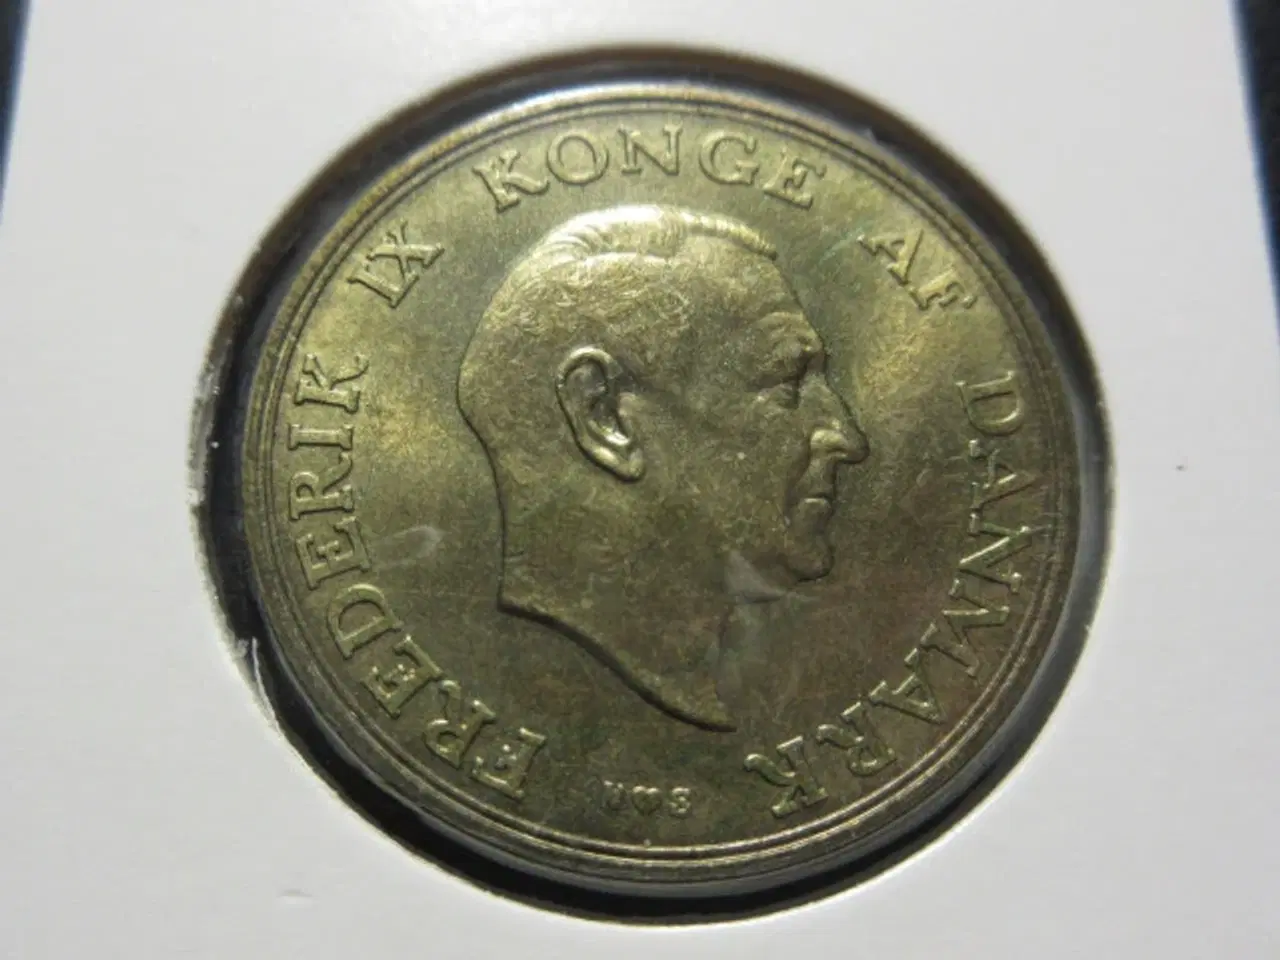 Billede 2 - 2 kroner 1955 unc